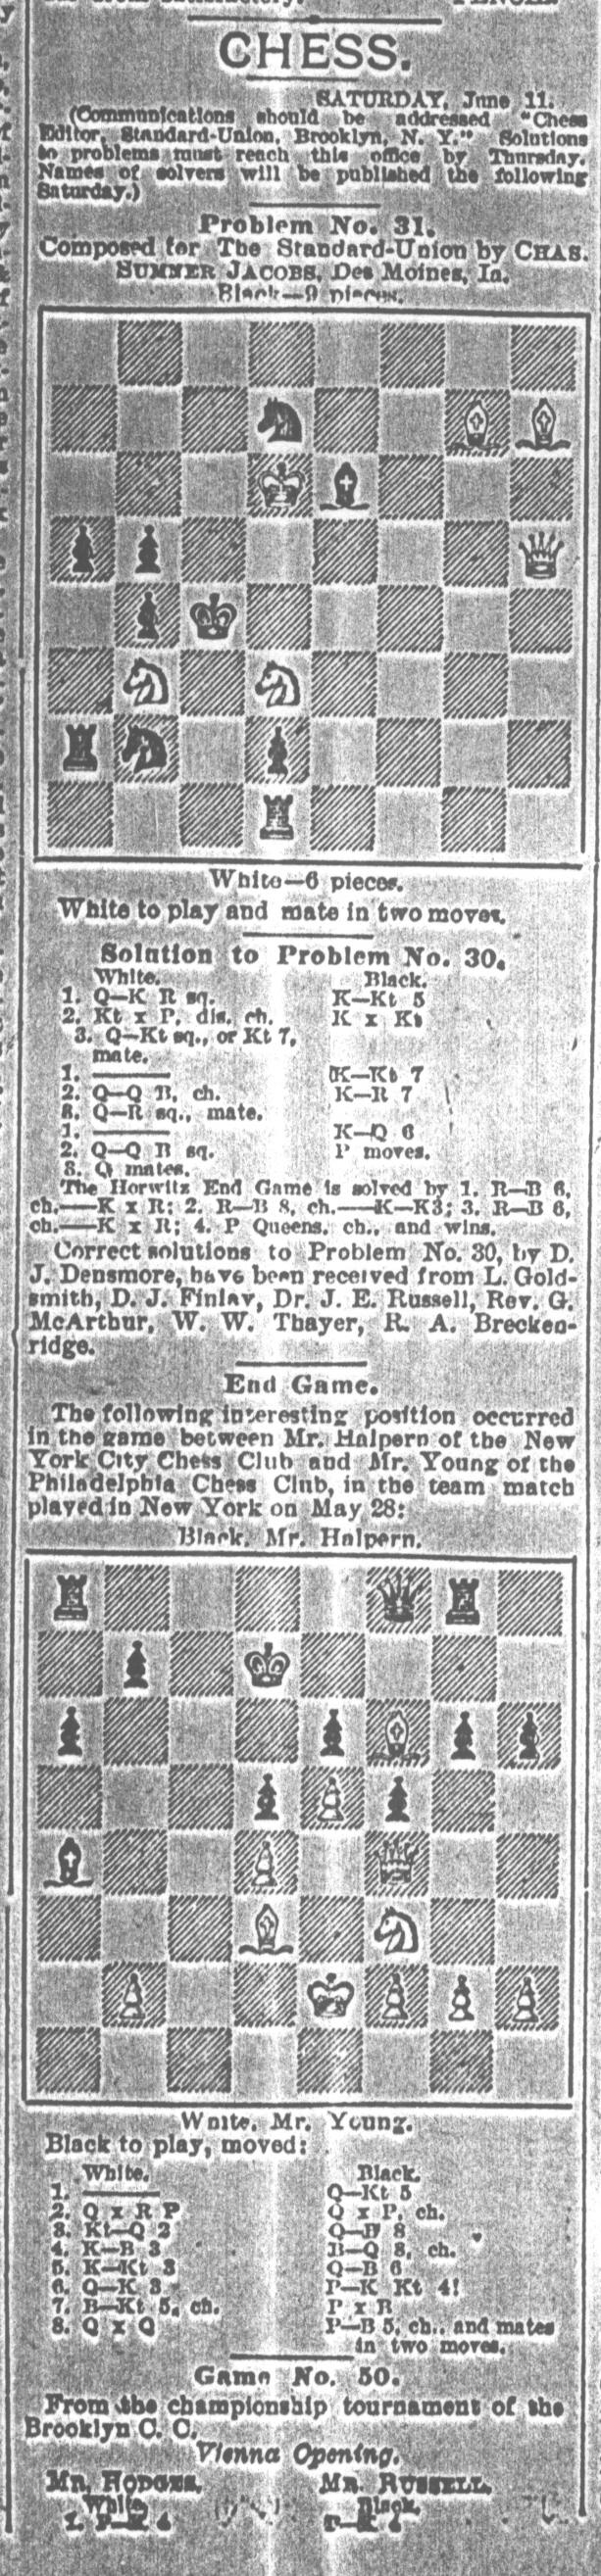 1892.06.11-01 Brooklyn Daily Standard-Union.jpg